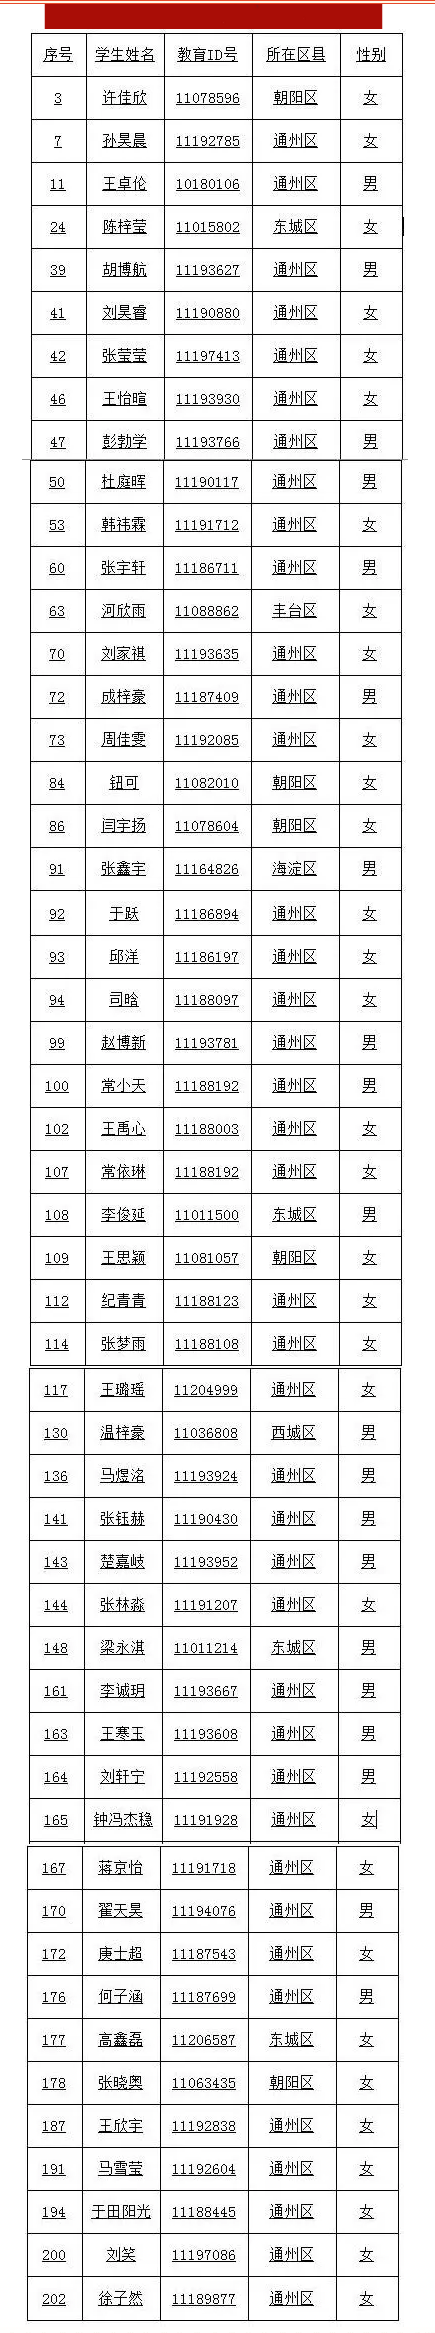 张家湾中学2019年1+3录取名单